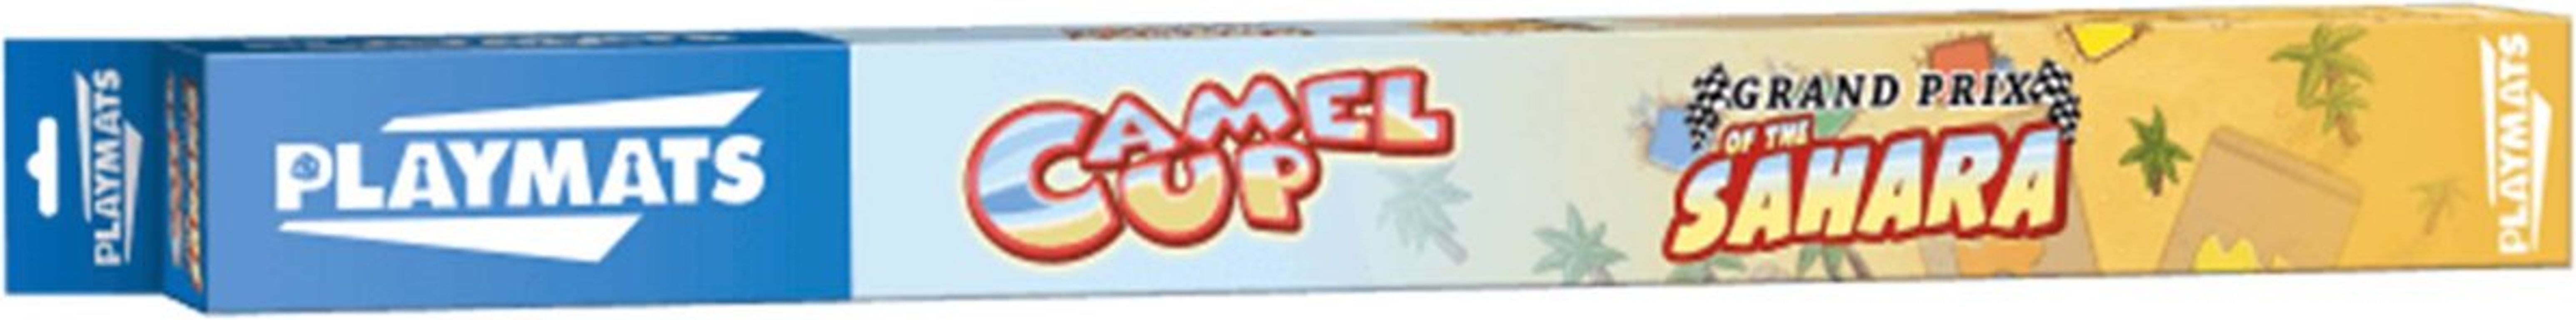 Camel Up playmat: Grandprix of the Sahara box